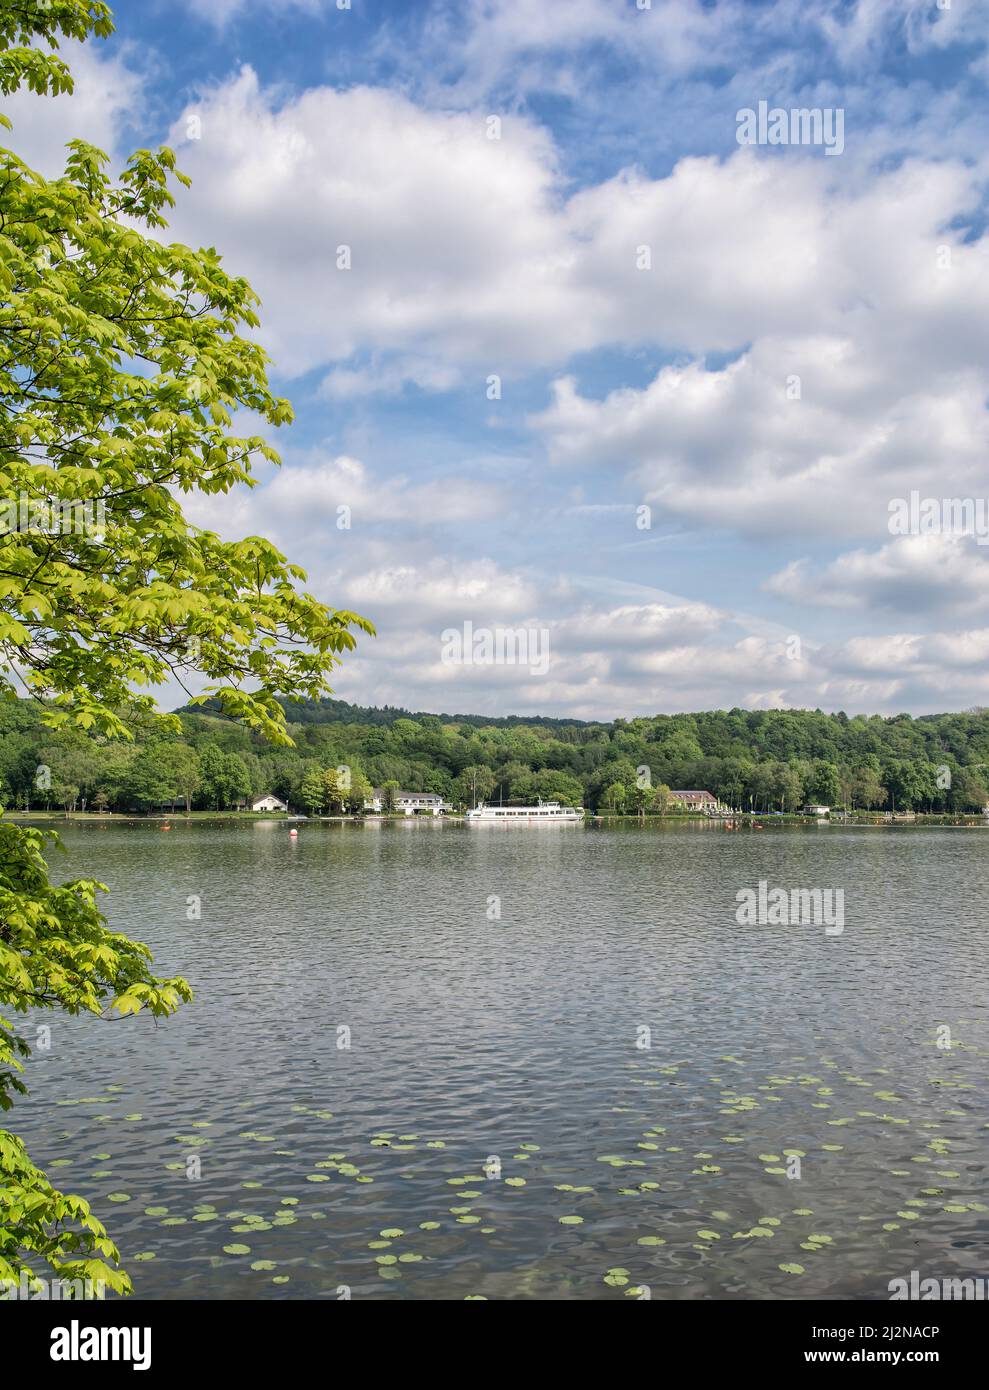 Lake Baldeneysee,Ruhrgebiet,North Rhine Westphalia,Germany Stock Photo